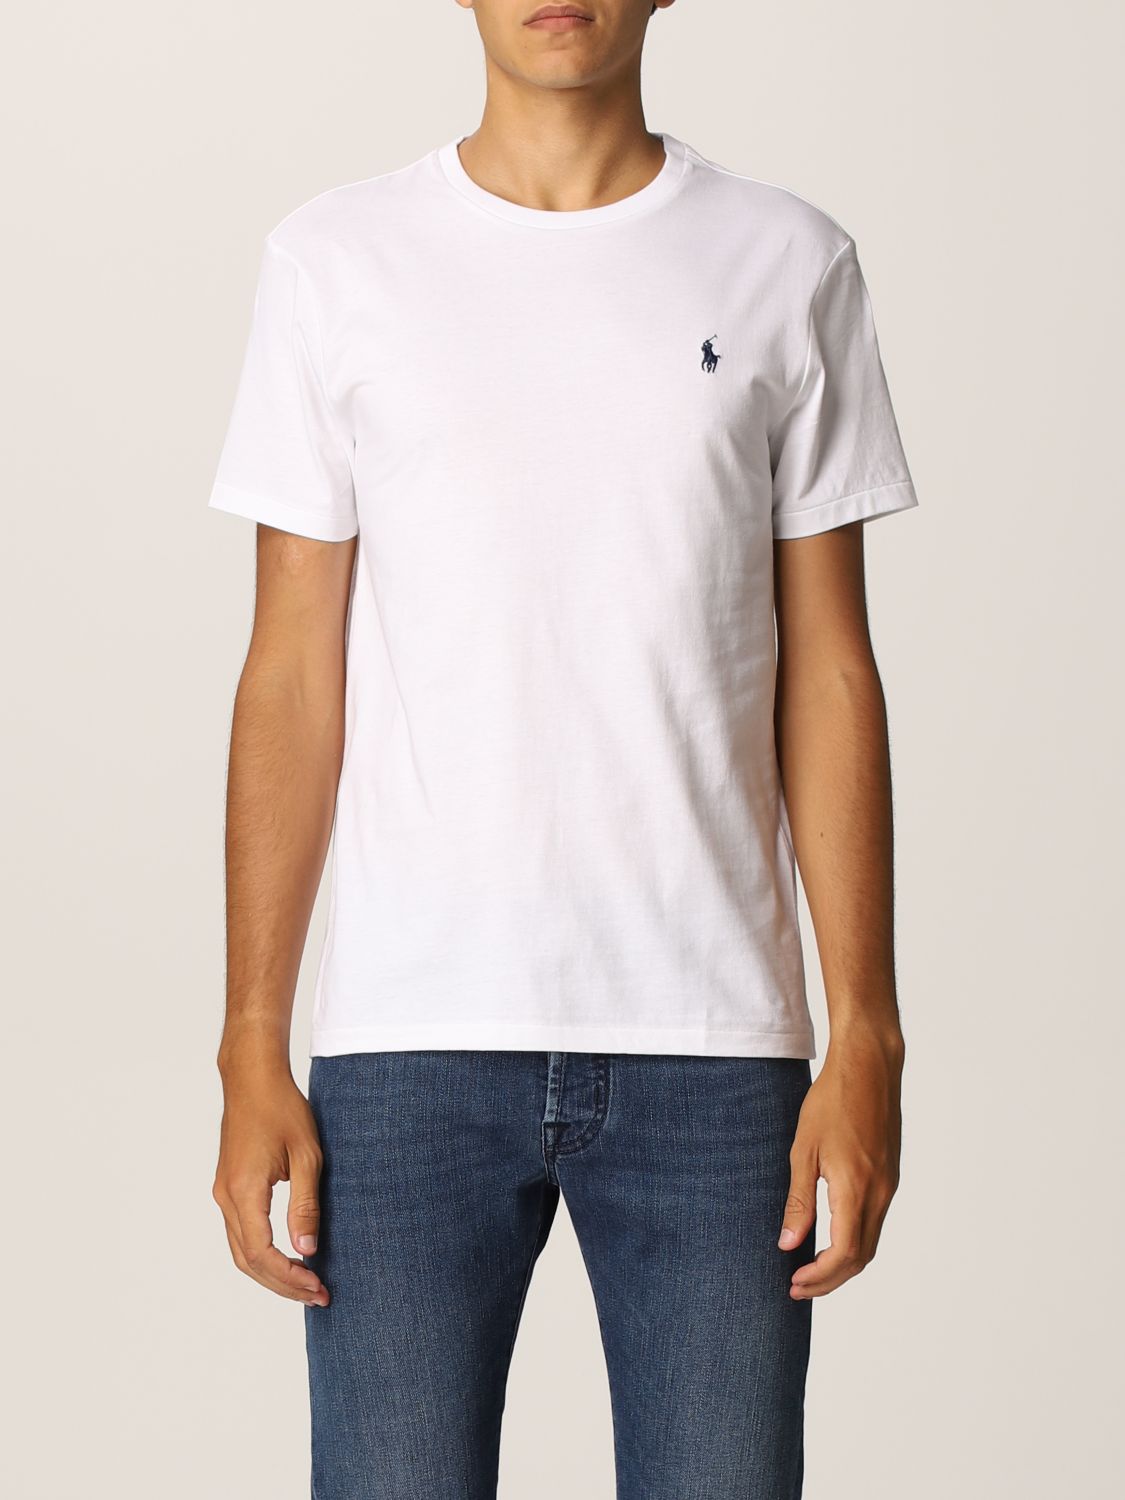 POLO RALPH LAUREN: cotton T-shirt | T-Shirt Polo Ralph Lauren Men White ...